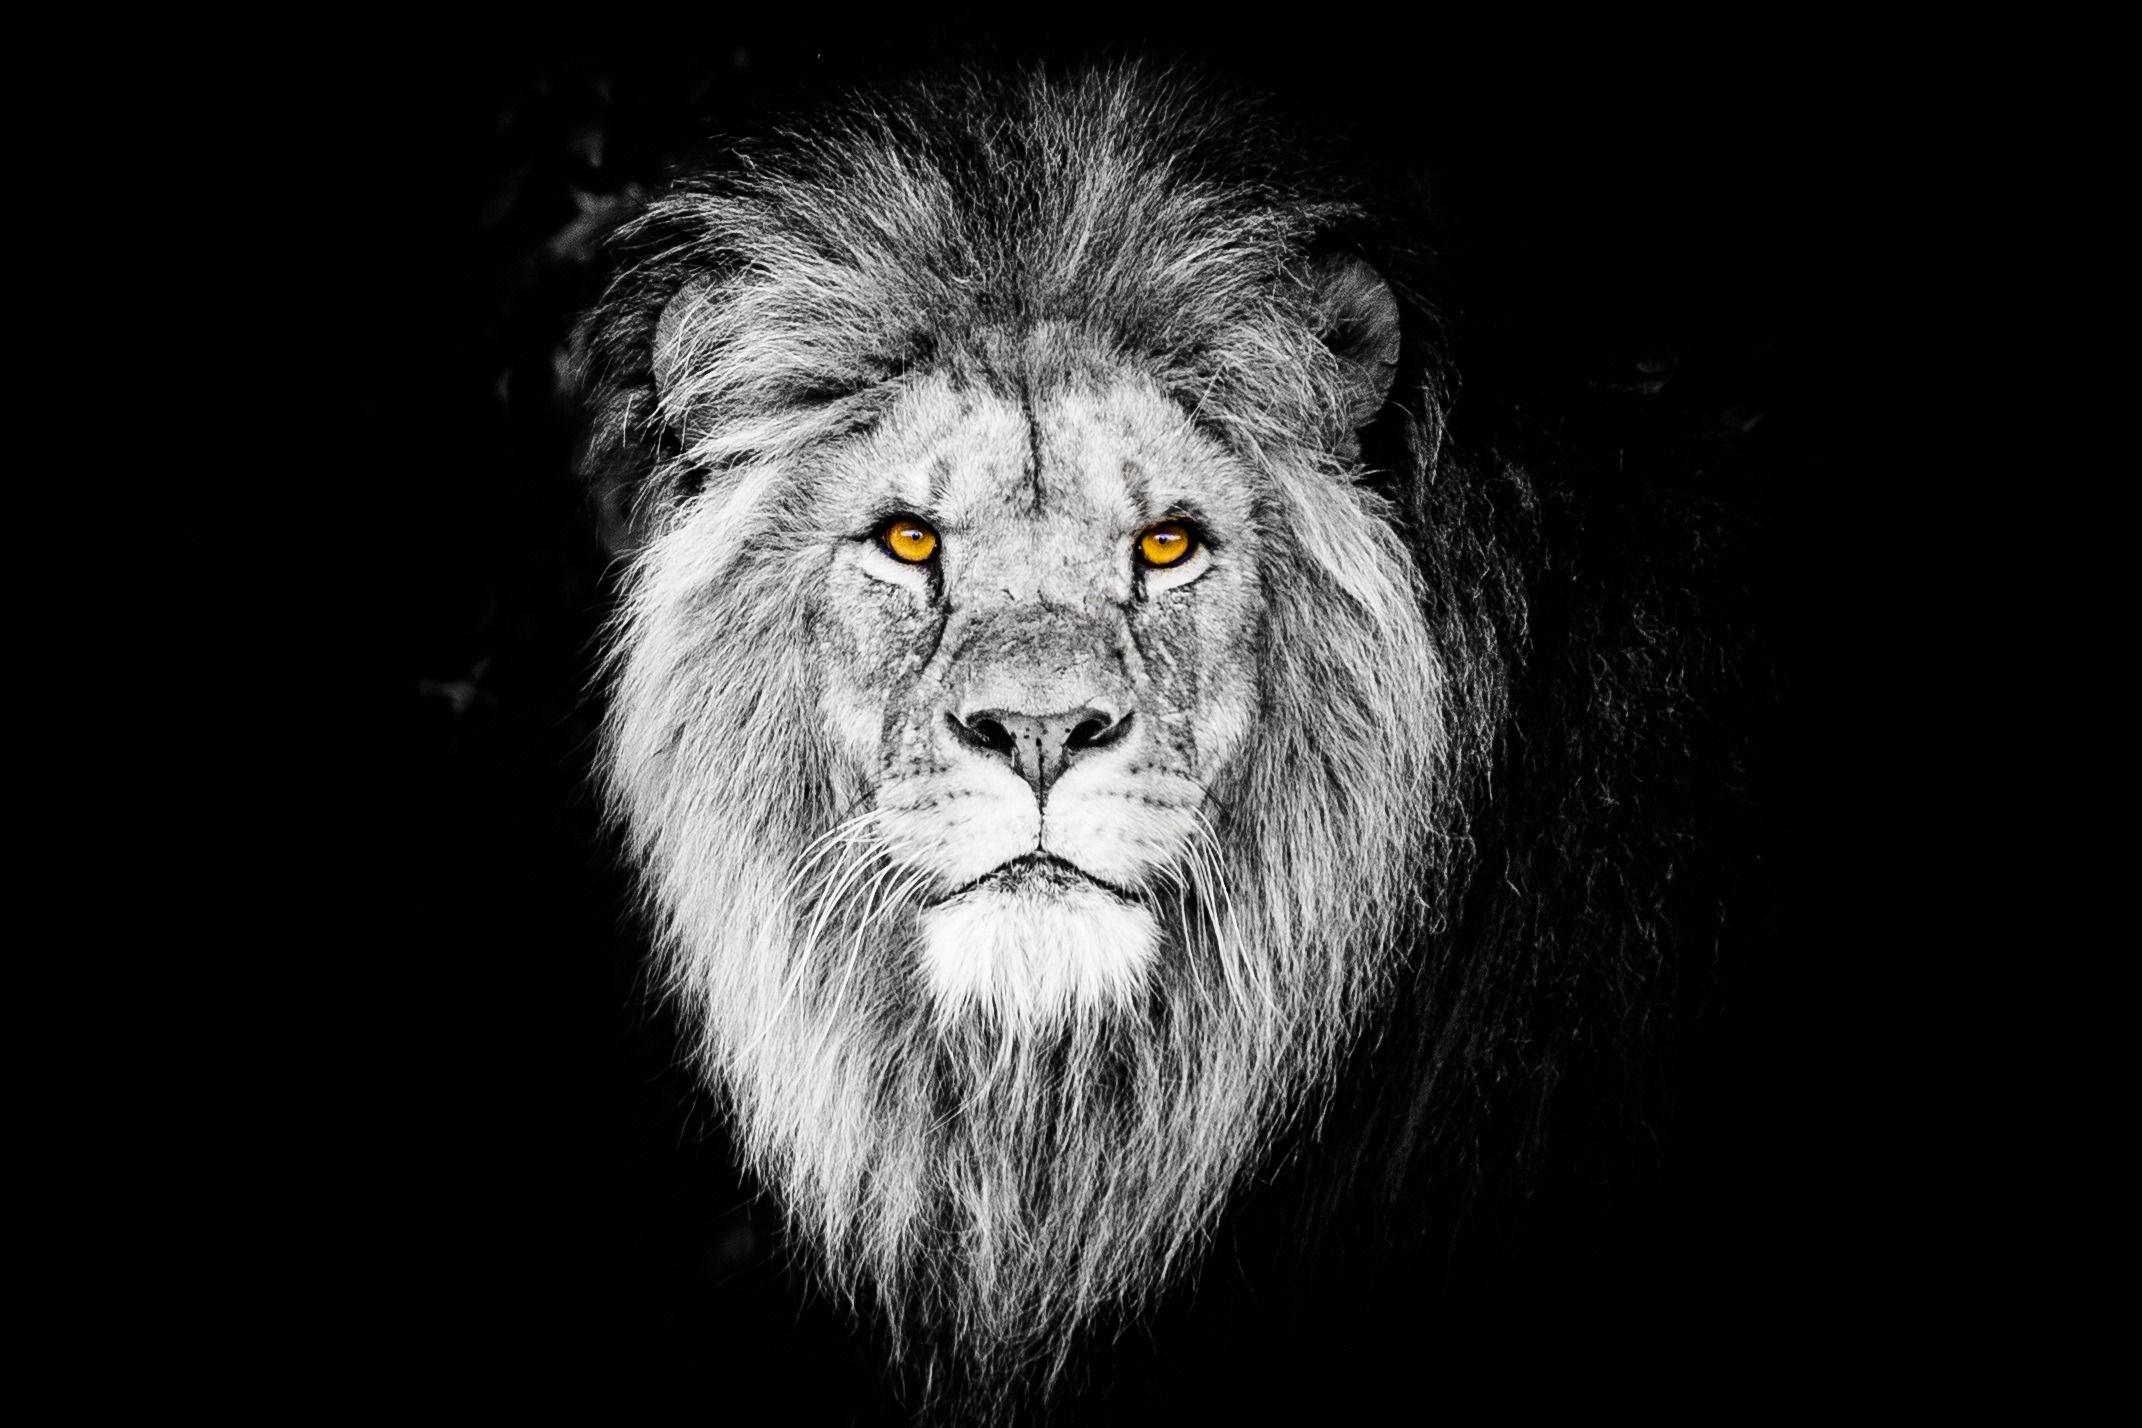 Black Lion 4k Wallpapers Top Free Black Lion 4k Backgrounds